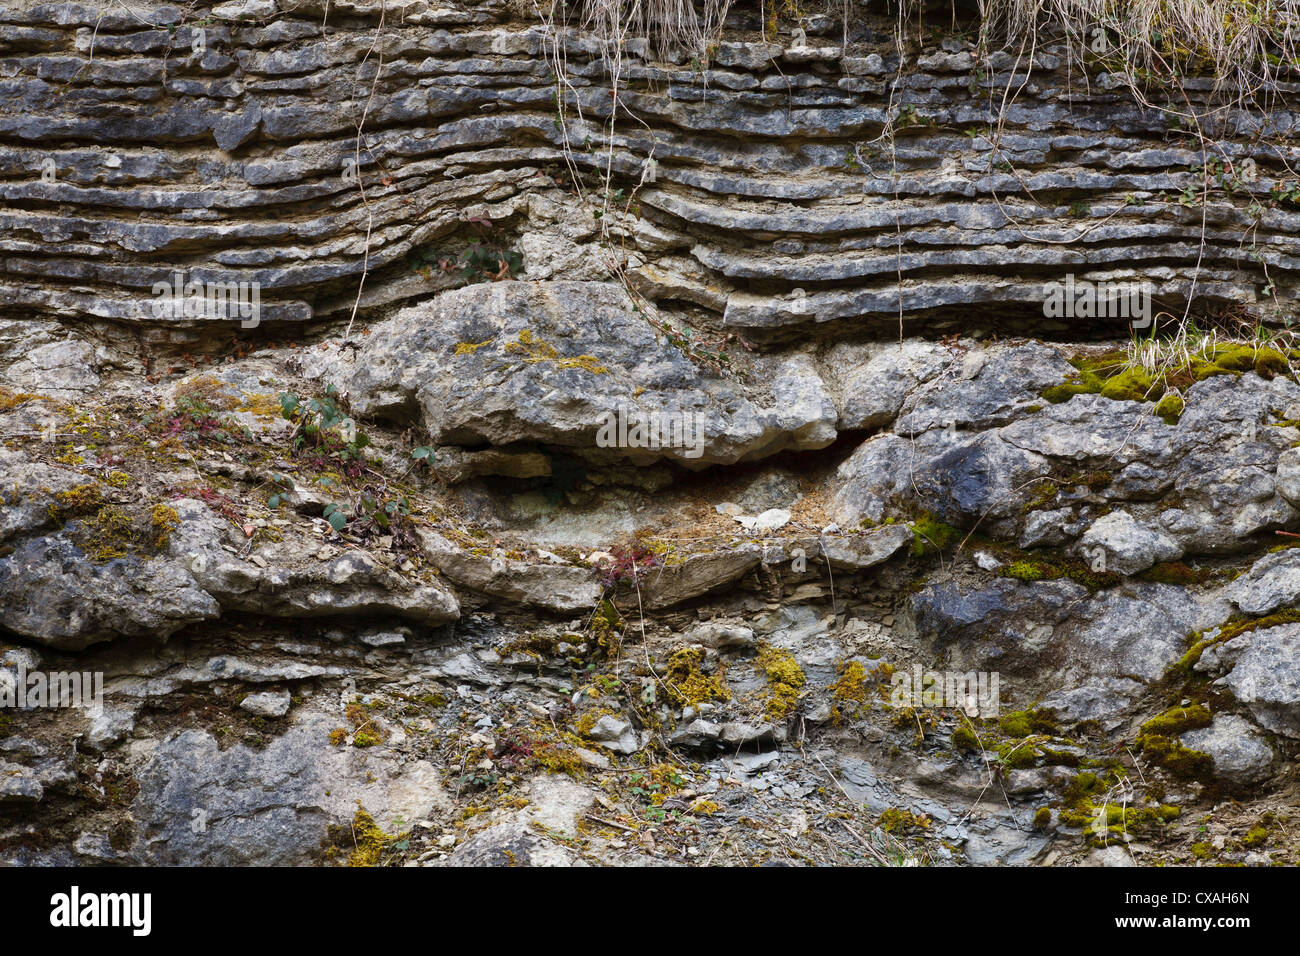 Silurian Kalkstein in einem Steinbruch on Wenlock Edge, zeigt Betten über eine Riffformation gelegt. Knowle Steinbruch. Shropshire. Stockfoto